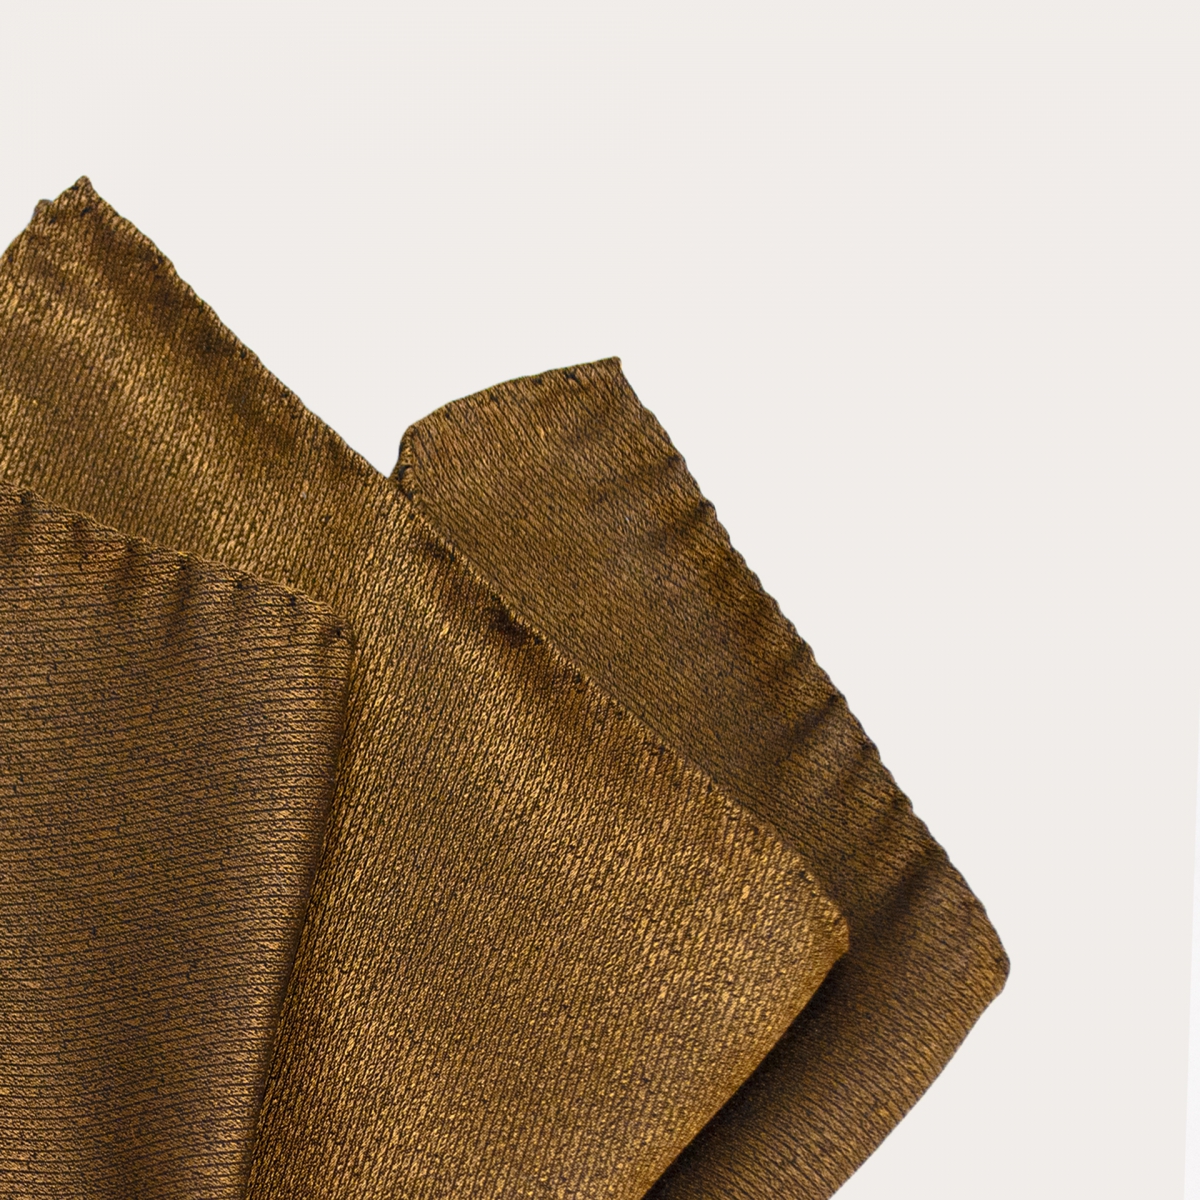 Élégante pochette de costume pour homme en soie jacquard or irisé